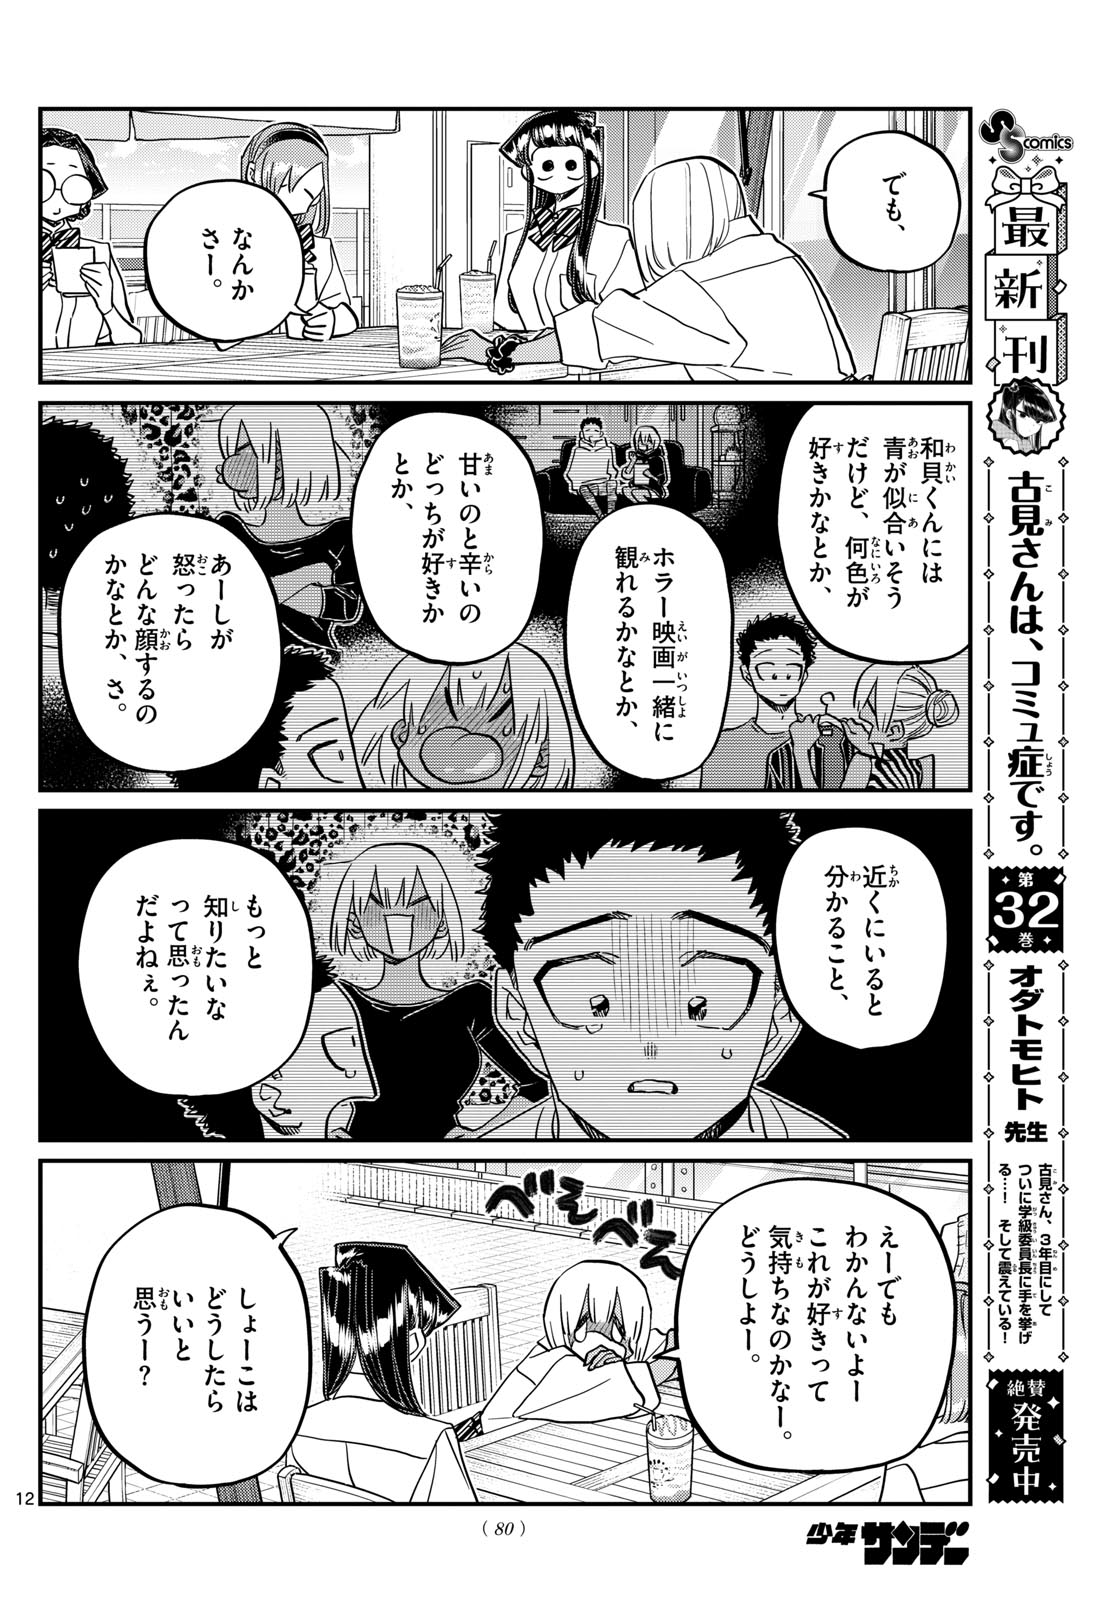 Komi-san wa Komyushou Desu - Chapter 444 - Page 12